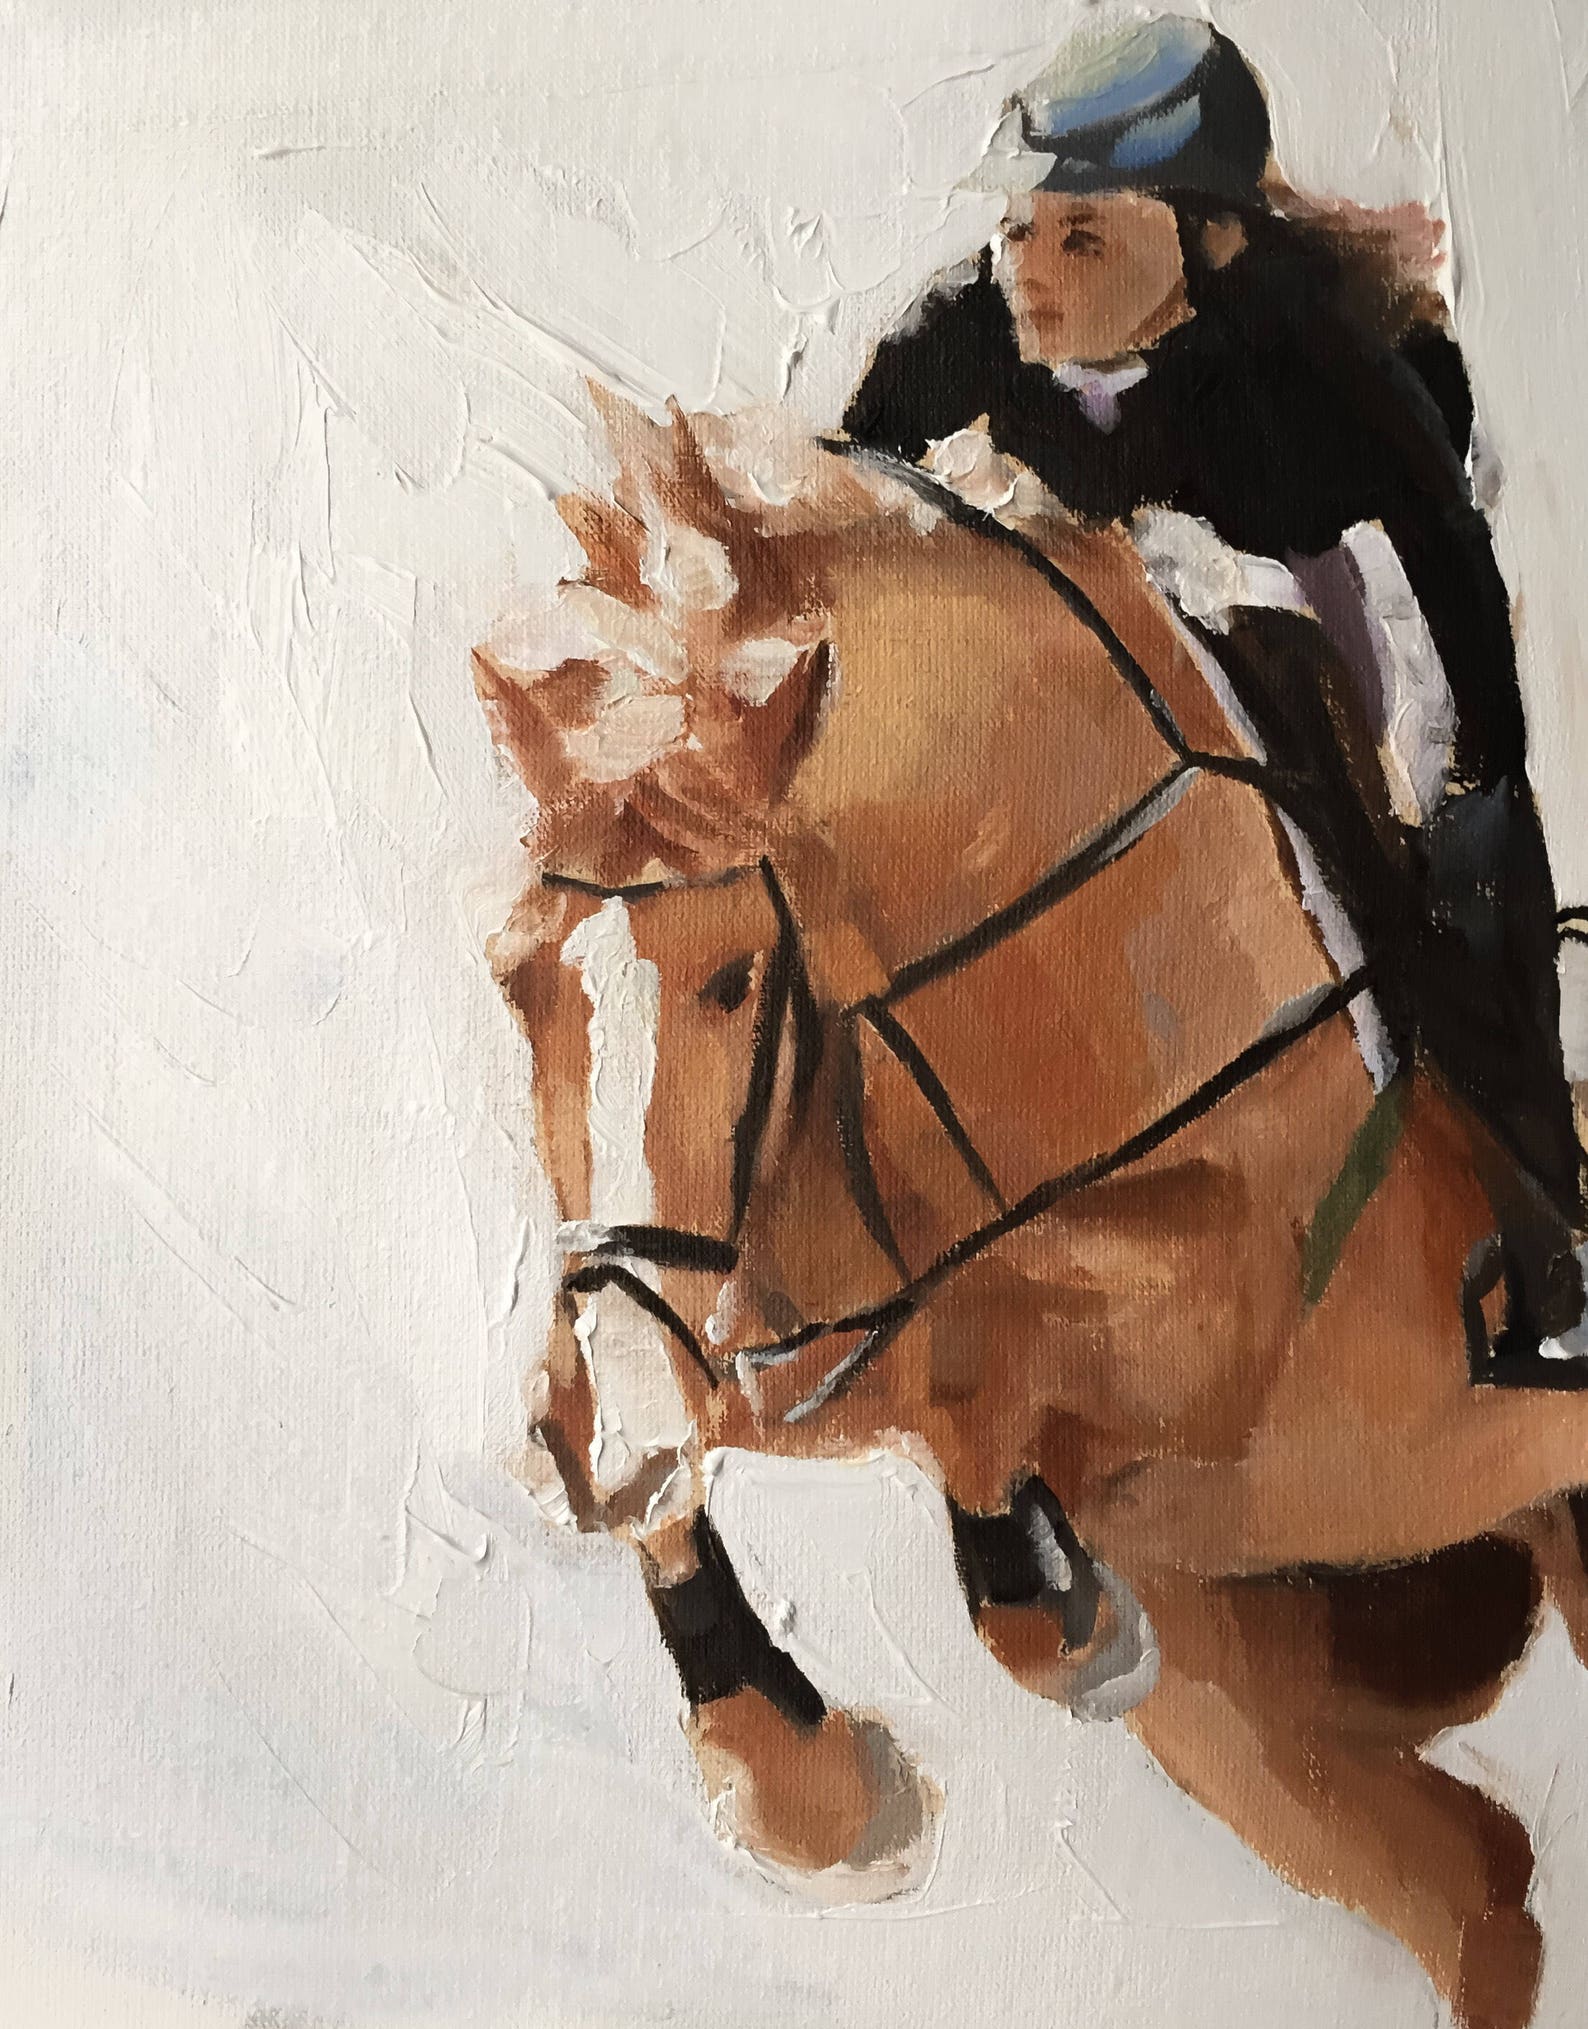 The Horse Rider картина. Скачки картина. Постер лошадь в одежде. Постер лошадь на бежевом фоне.